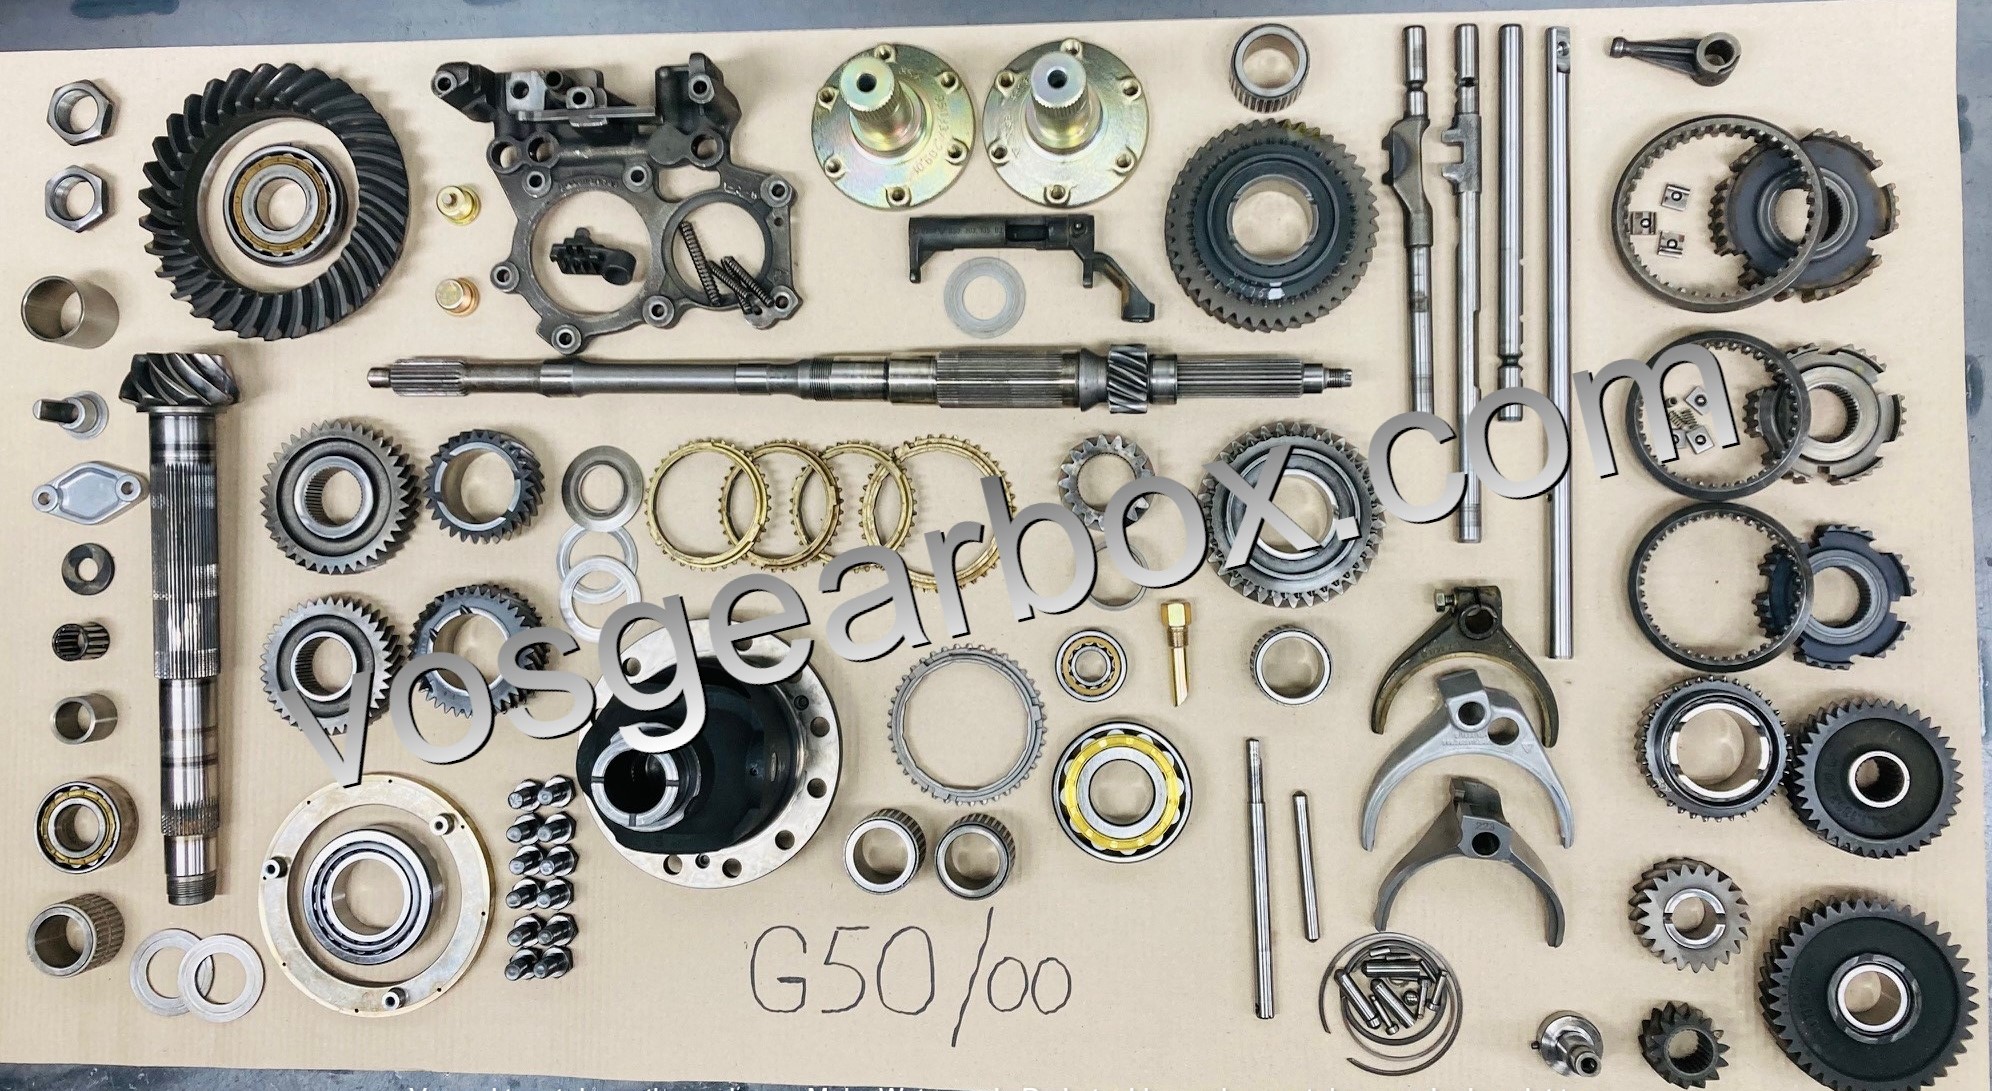 G50/00 - G50-00 - G5000 - G50 carrera - getriebe G50 - gearbox G50 - G50/21 - G50-21 - G5021 -